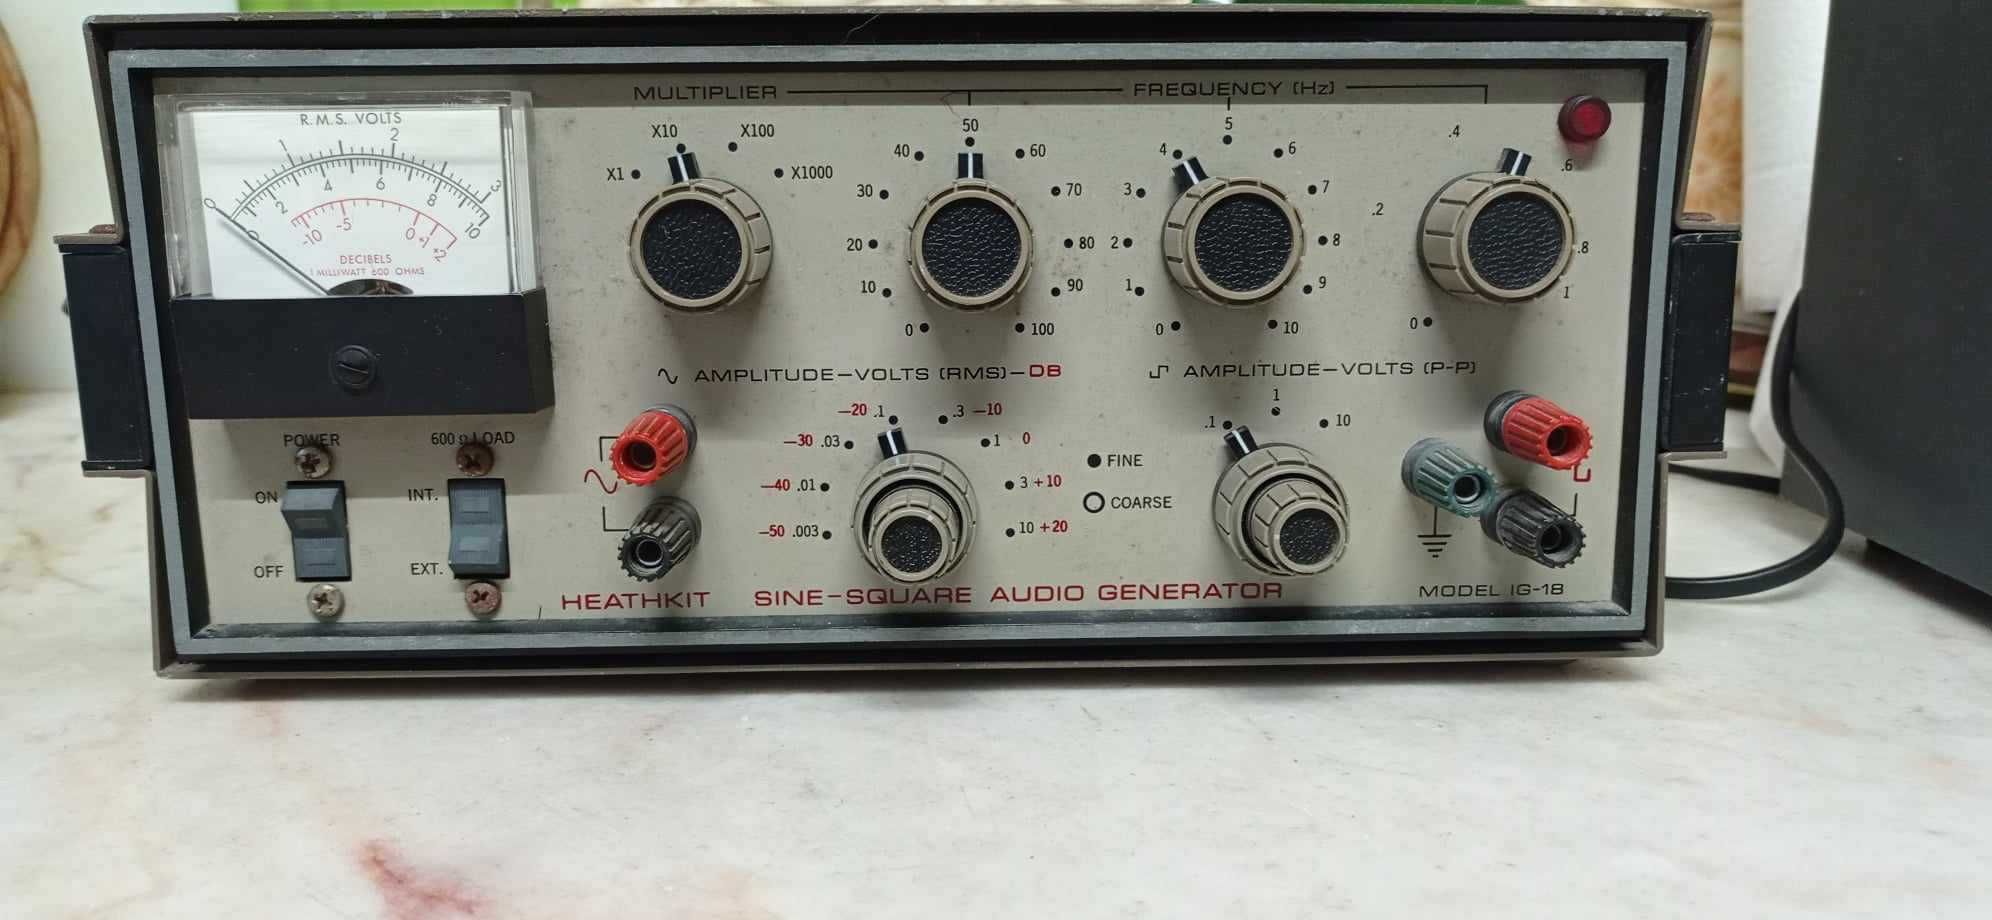 Heathkit Sine-Square Audio Generator IG-18